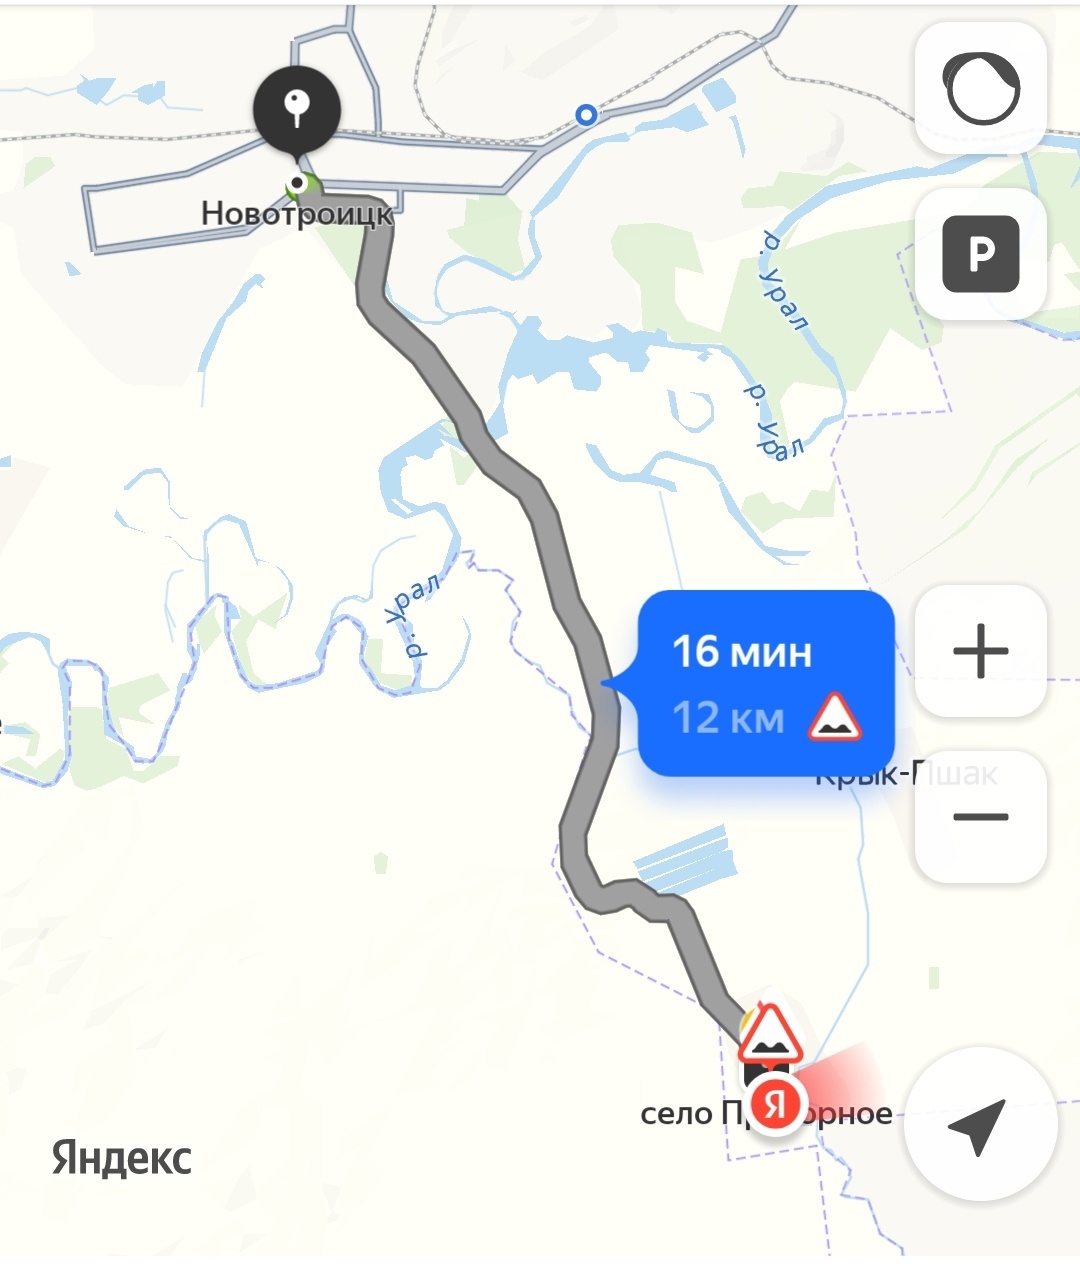 Схема проезда город Новотроицк - село Пригорное